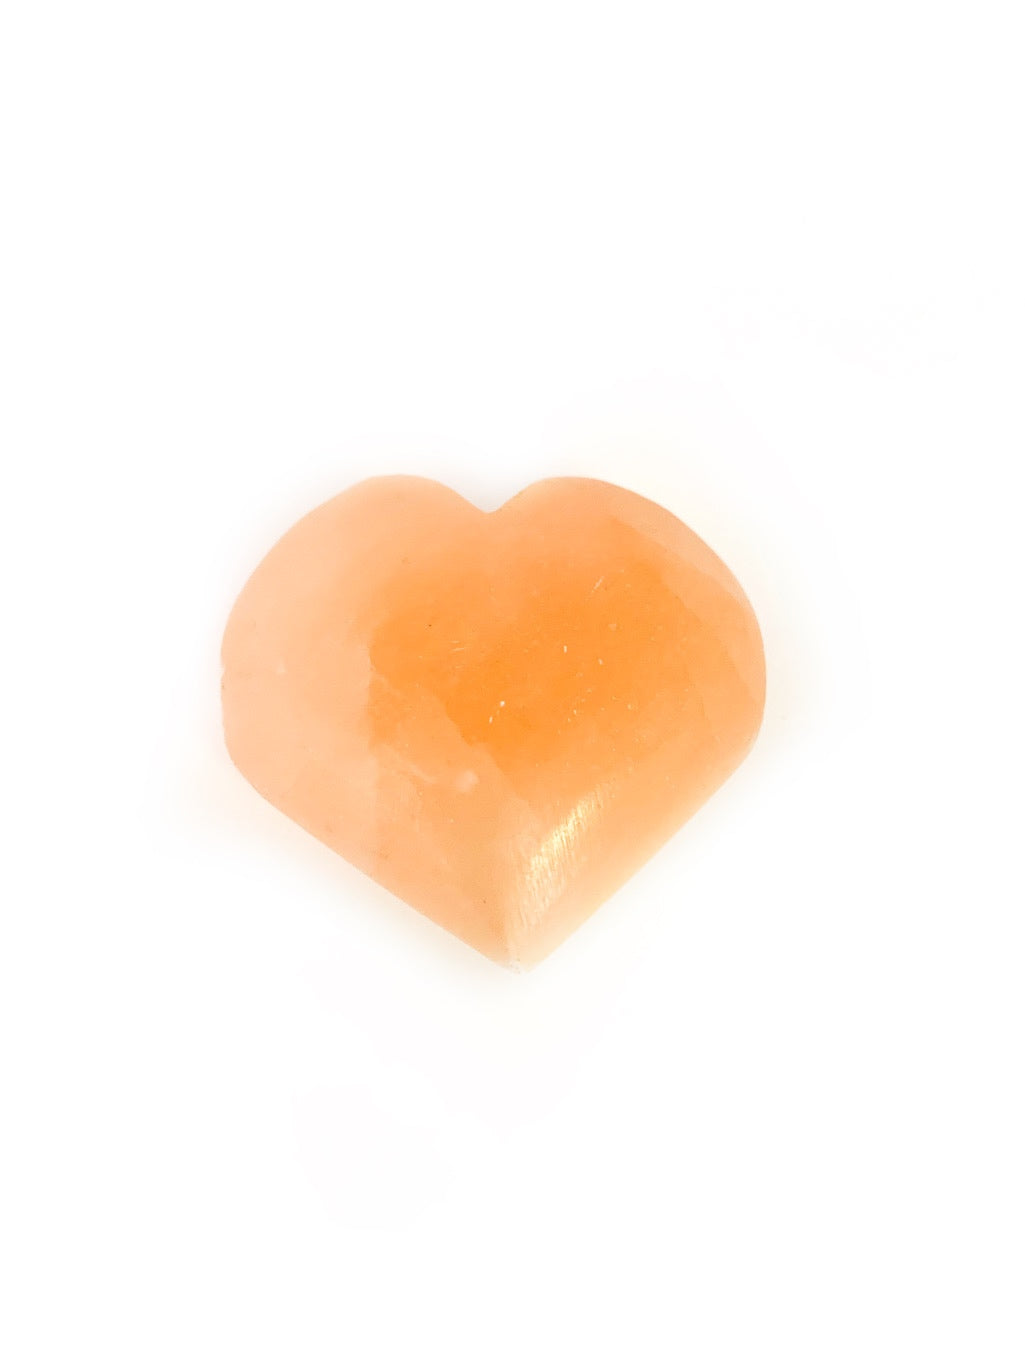 Peach selenite heart 4cm